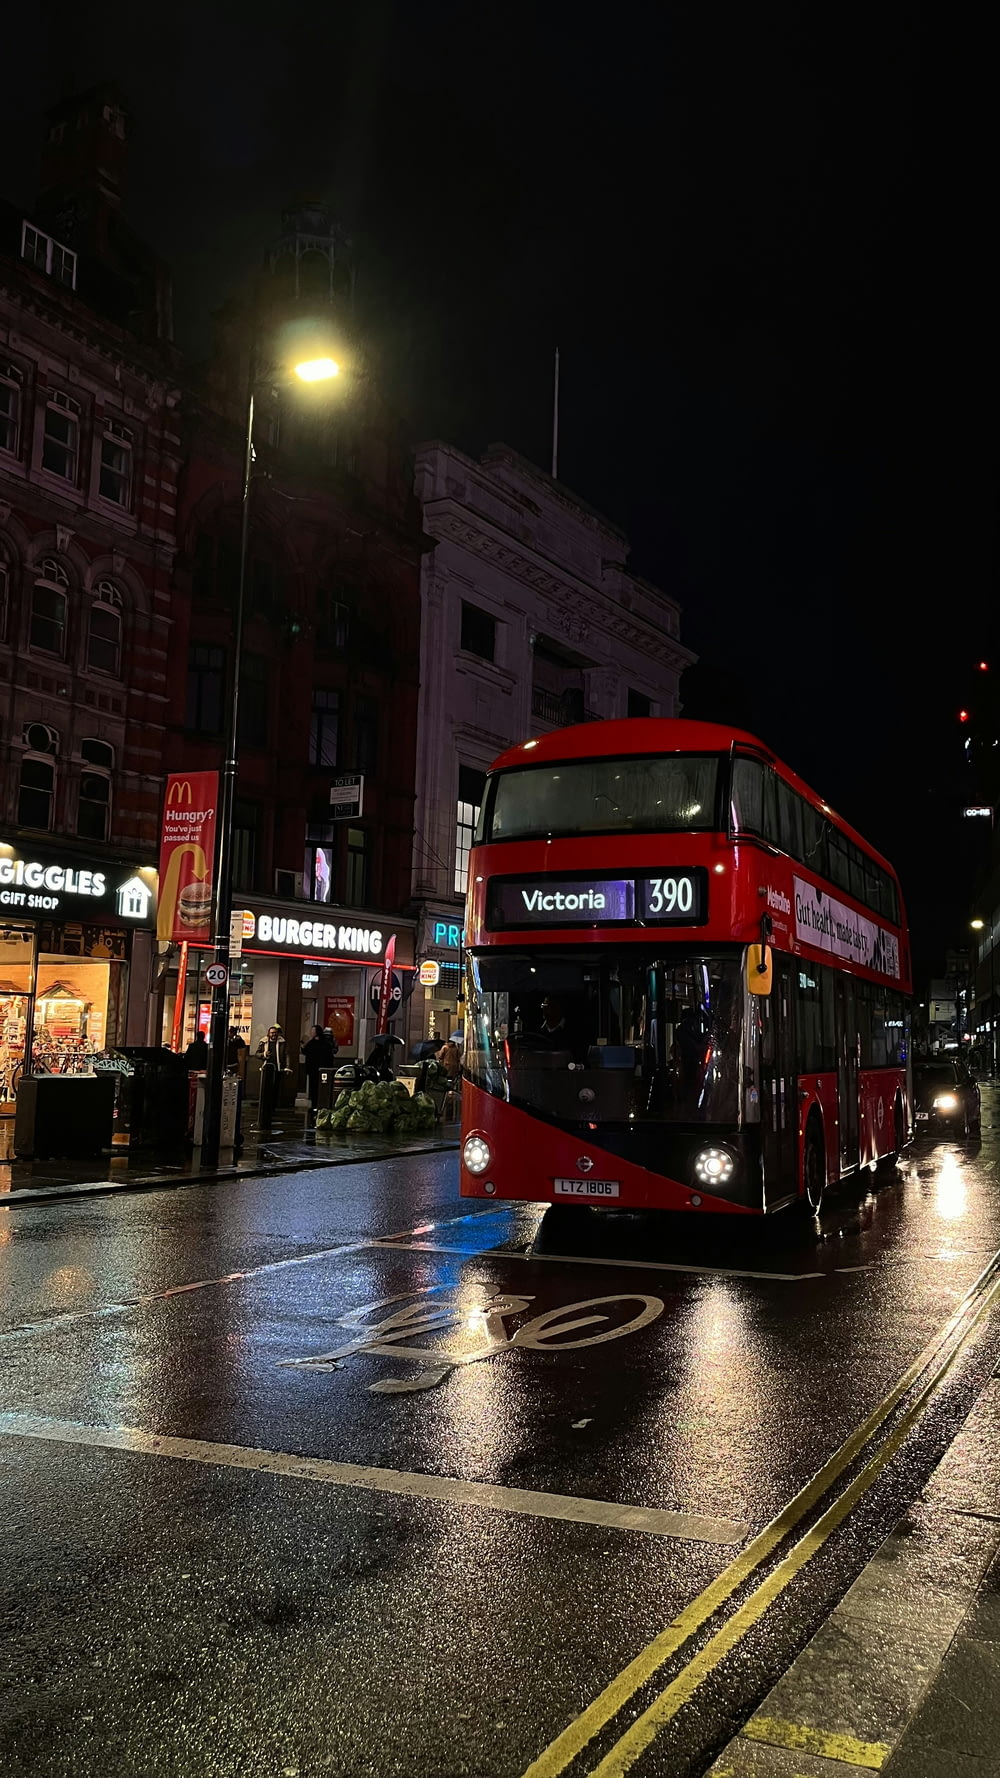 Un autobús rojo de dos pisos conduciendo por una calle de noche